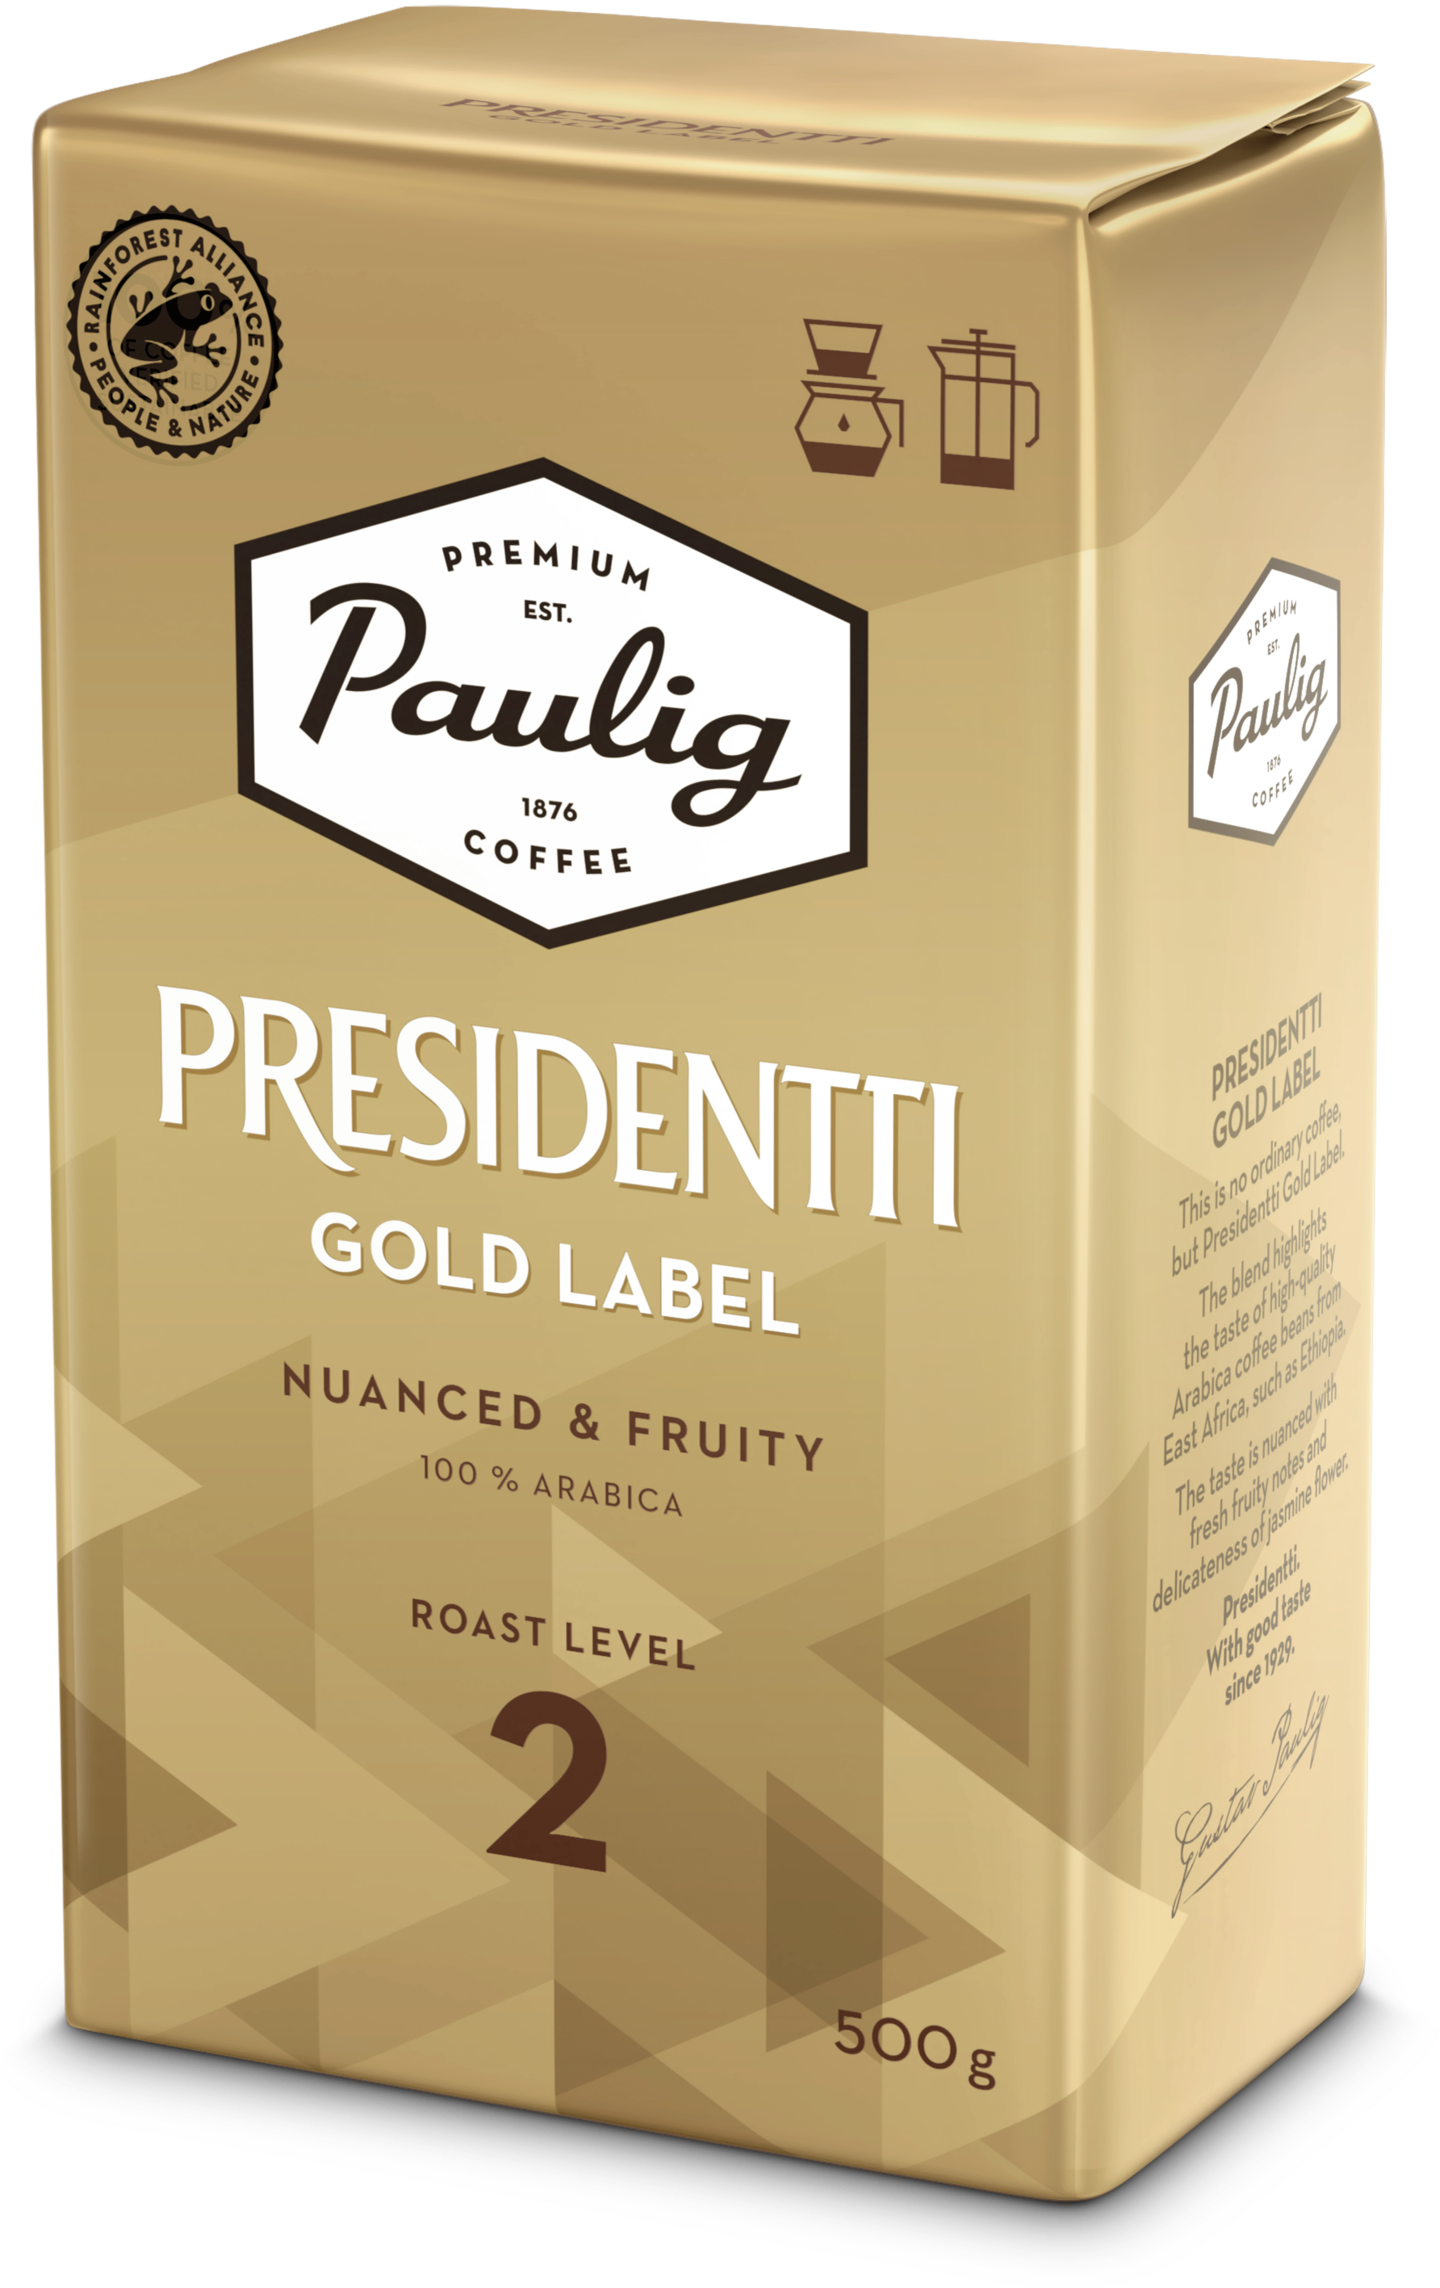 Presidentti kahvi 500g gold label hj